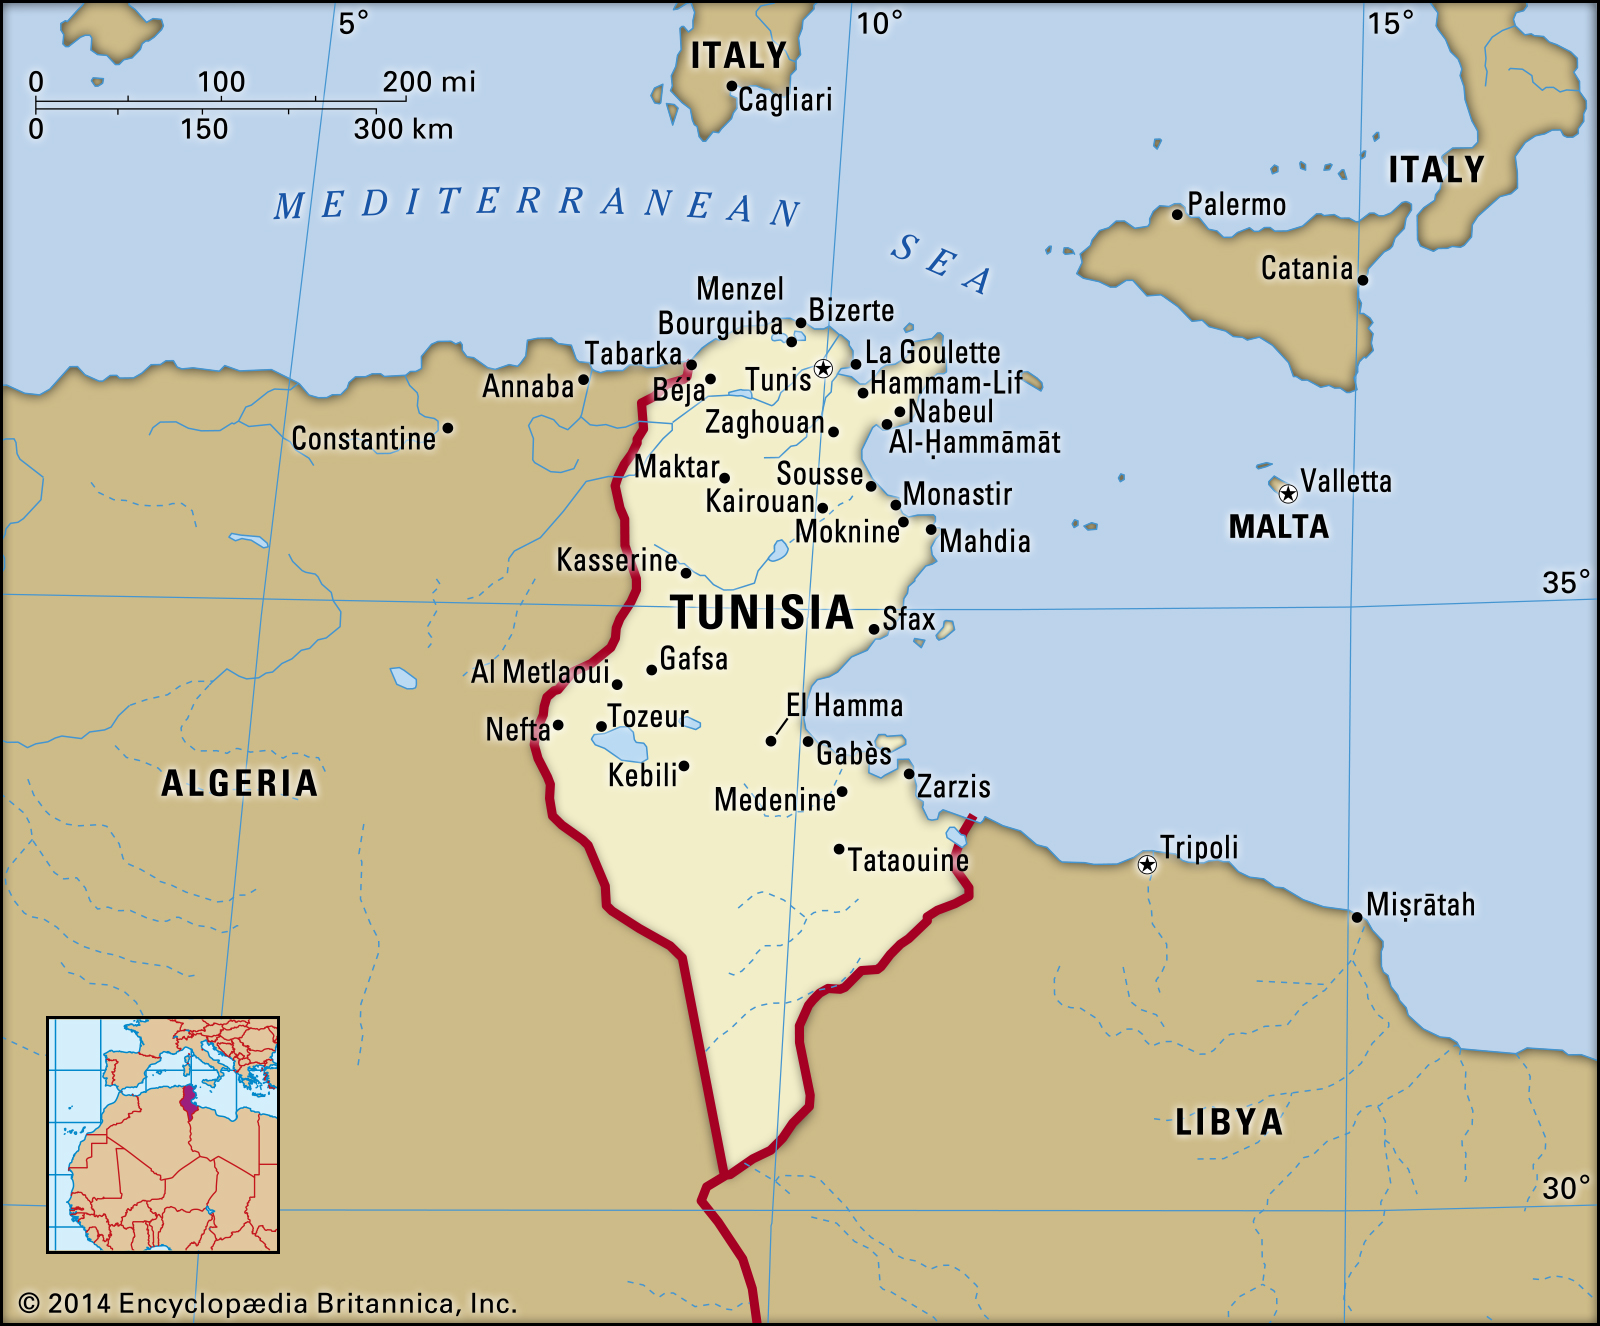 Femeie tunisiana cauta algeriana